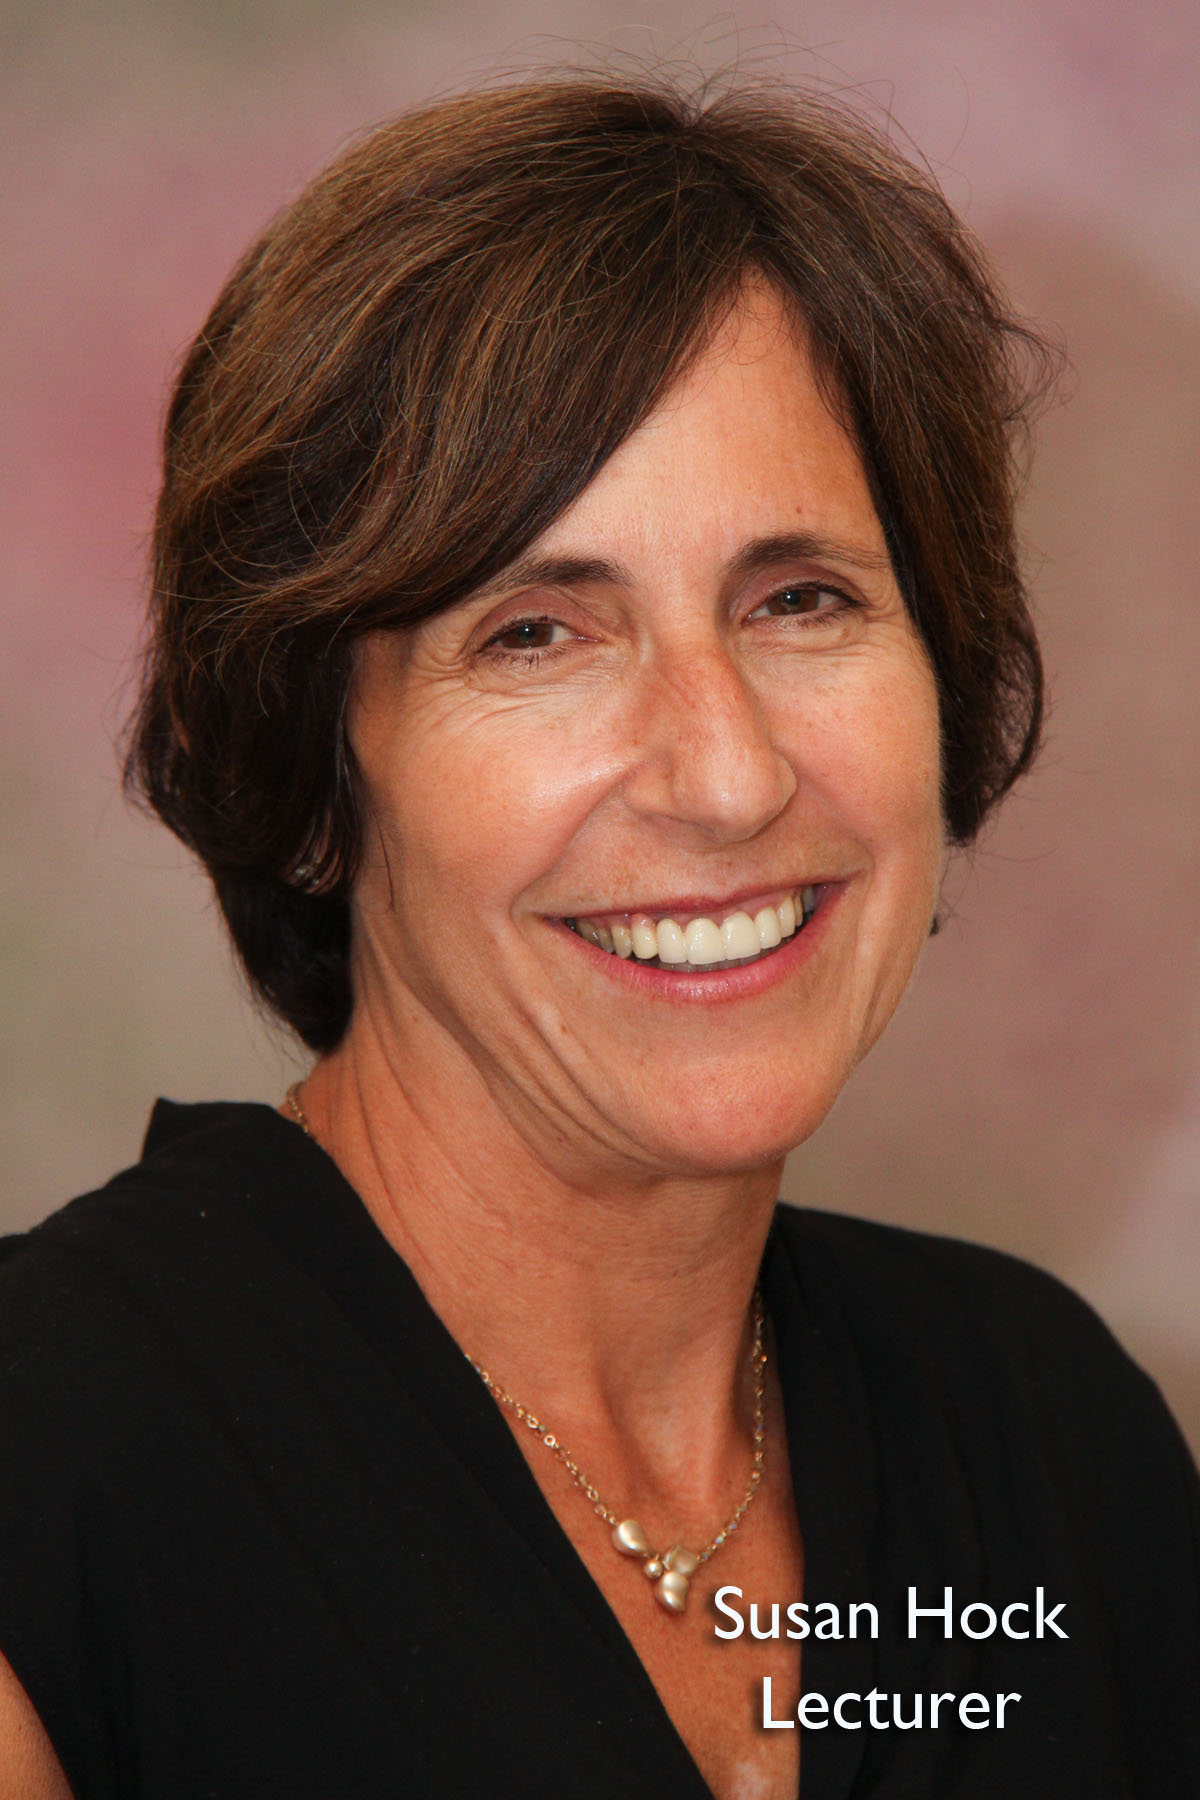 image of Susan Hock, Lecturer